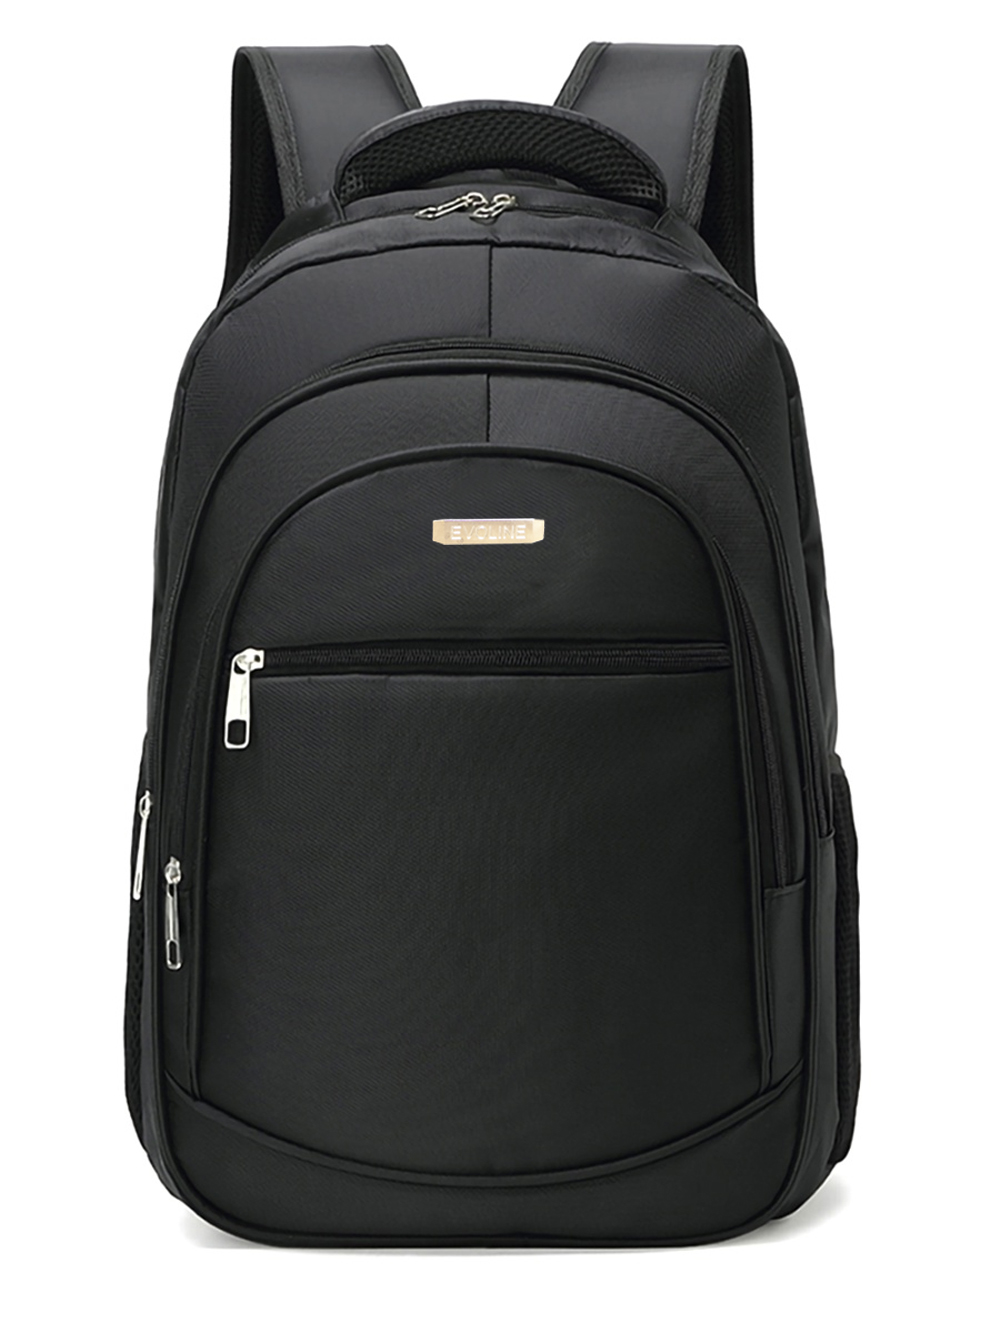 Рюкзак школьный Evoline Большой черный EVO-150-1 - фото 1